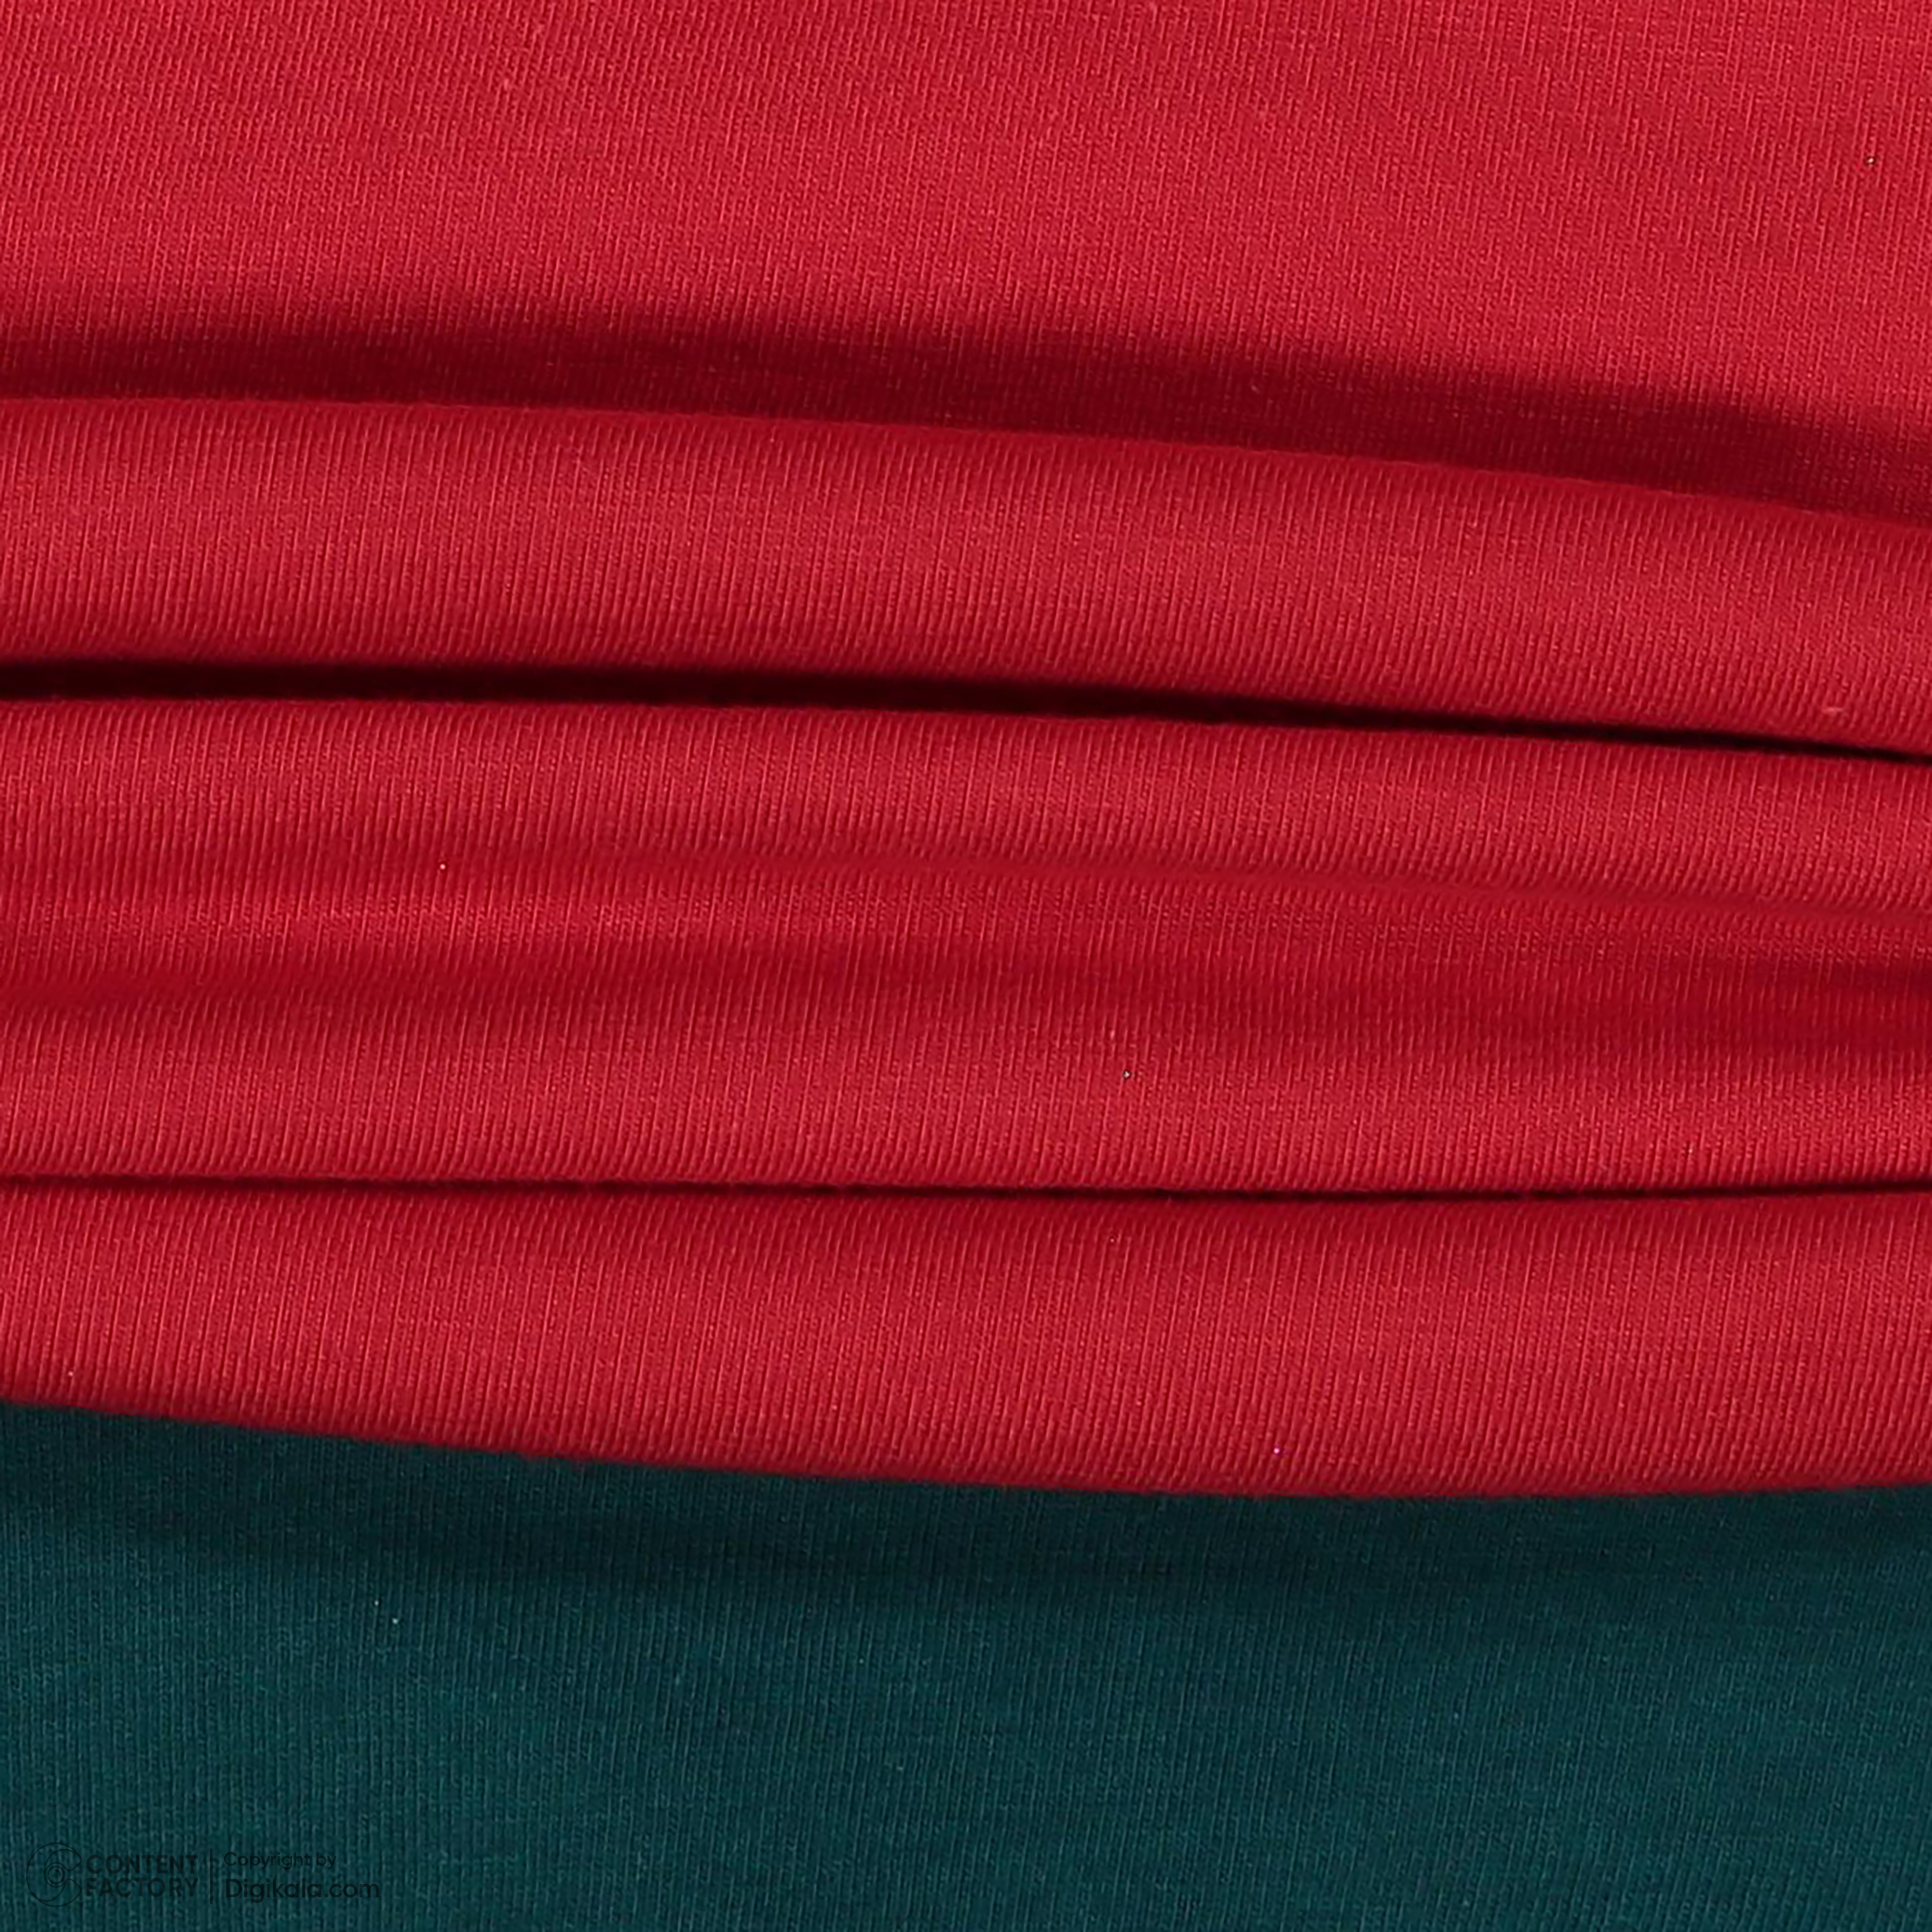 ست تی شرت و شلوار بچگانه ناربن مدل 1521490 رنگ قرمز -  - 3